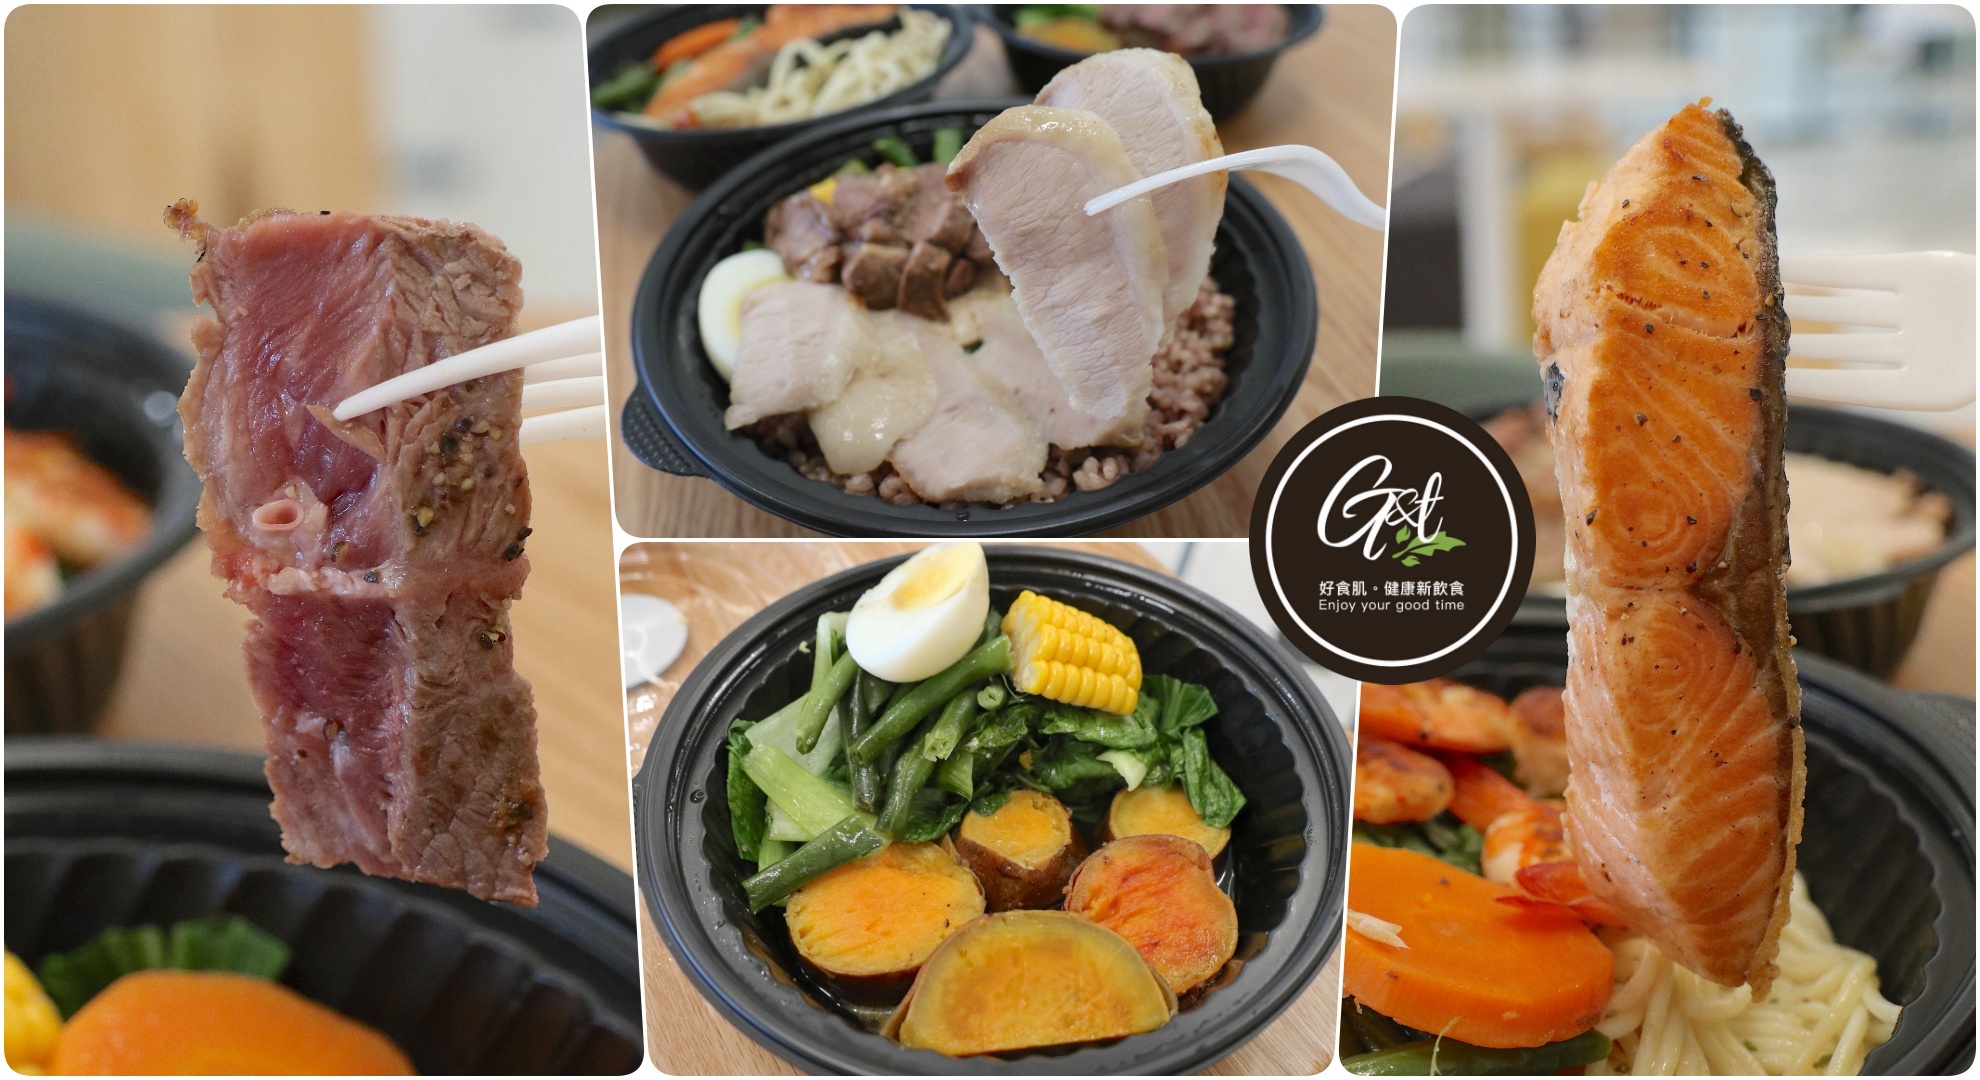 札嘎其,美食,釜山,韓國,魚市場 @Helena's Blog